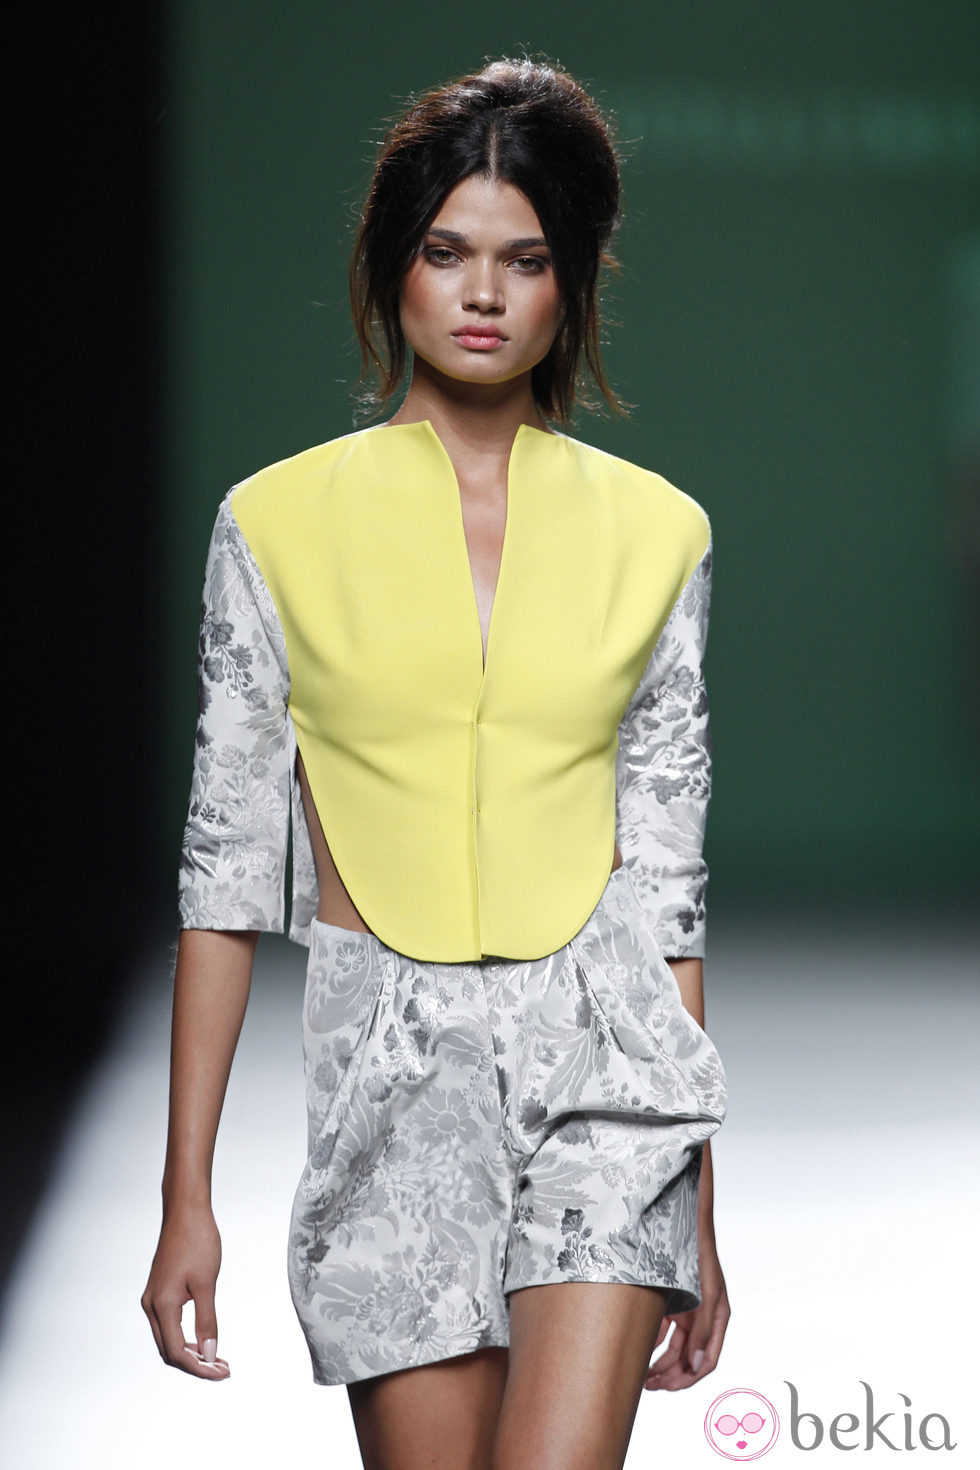 Chaleco bicolor de la colección primavera/verano 2014 de Devota&Lomba en Madrid Fashion Week